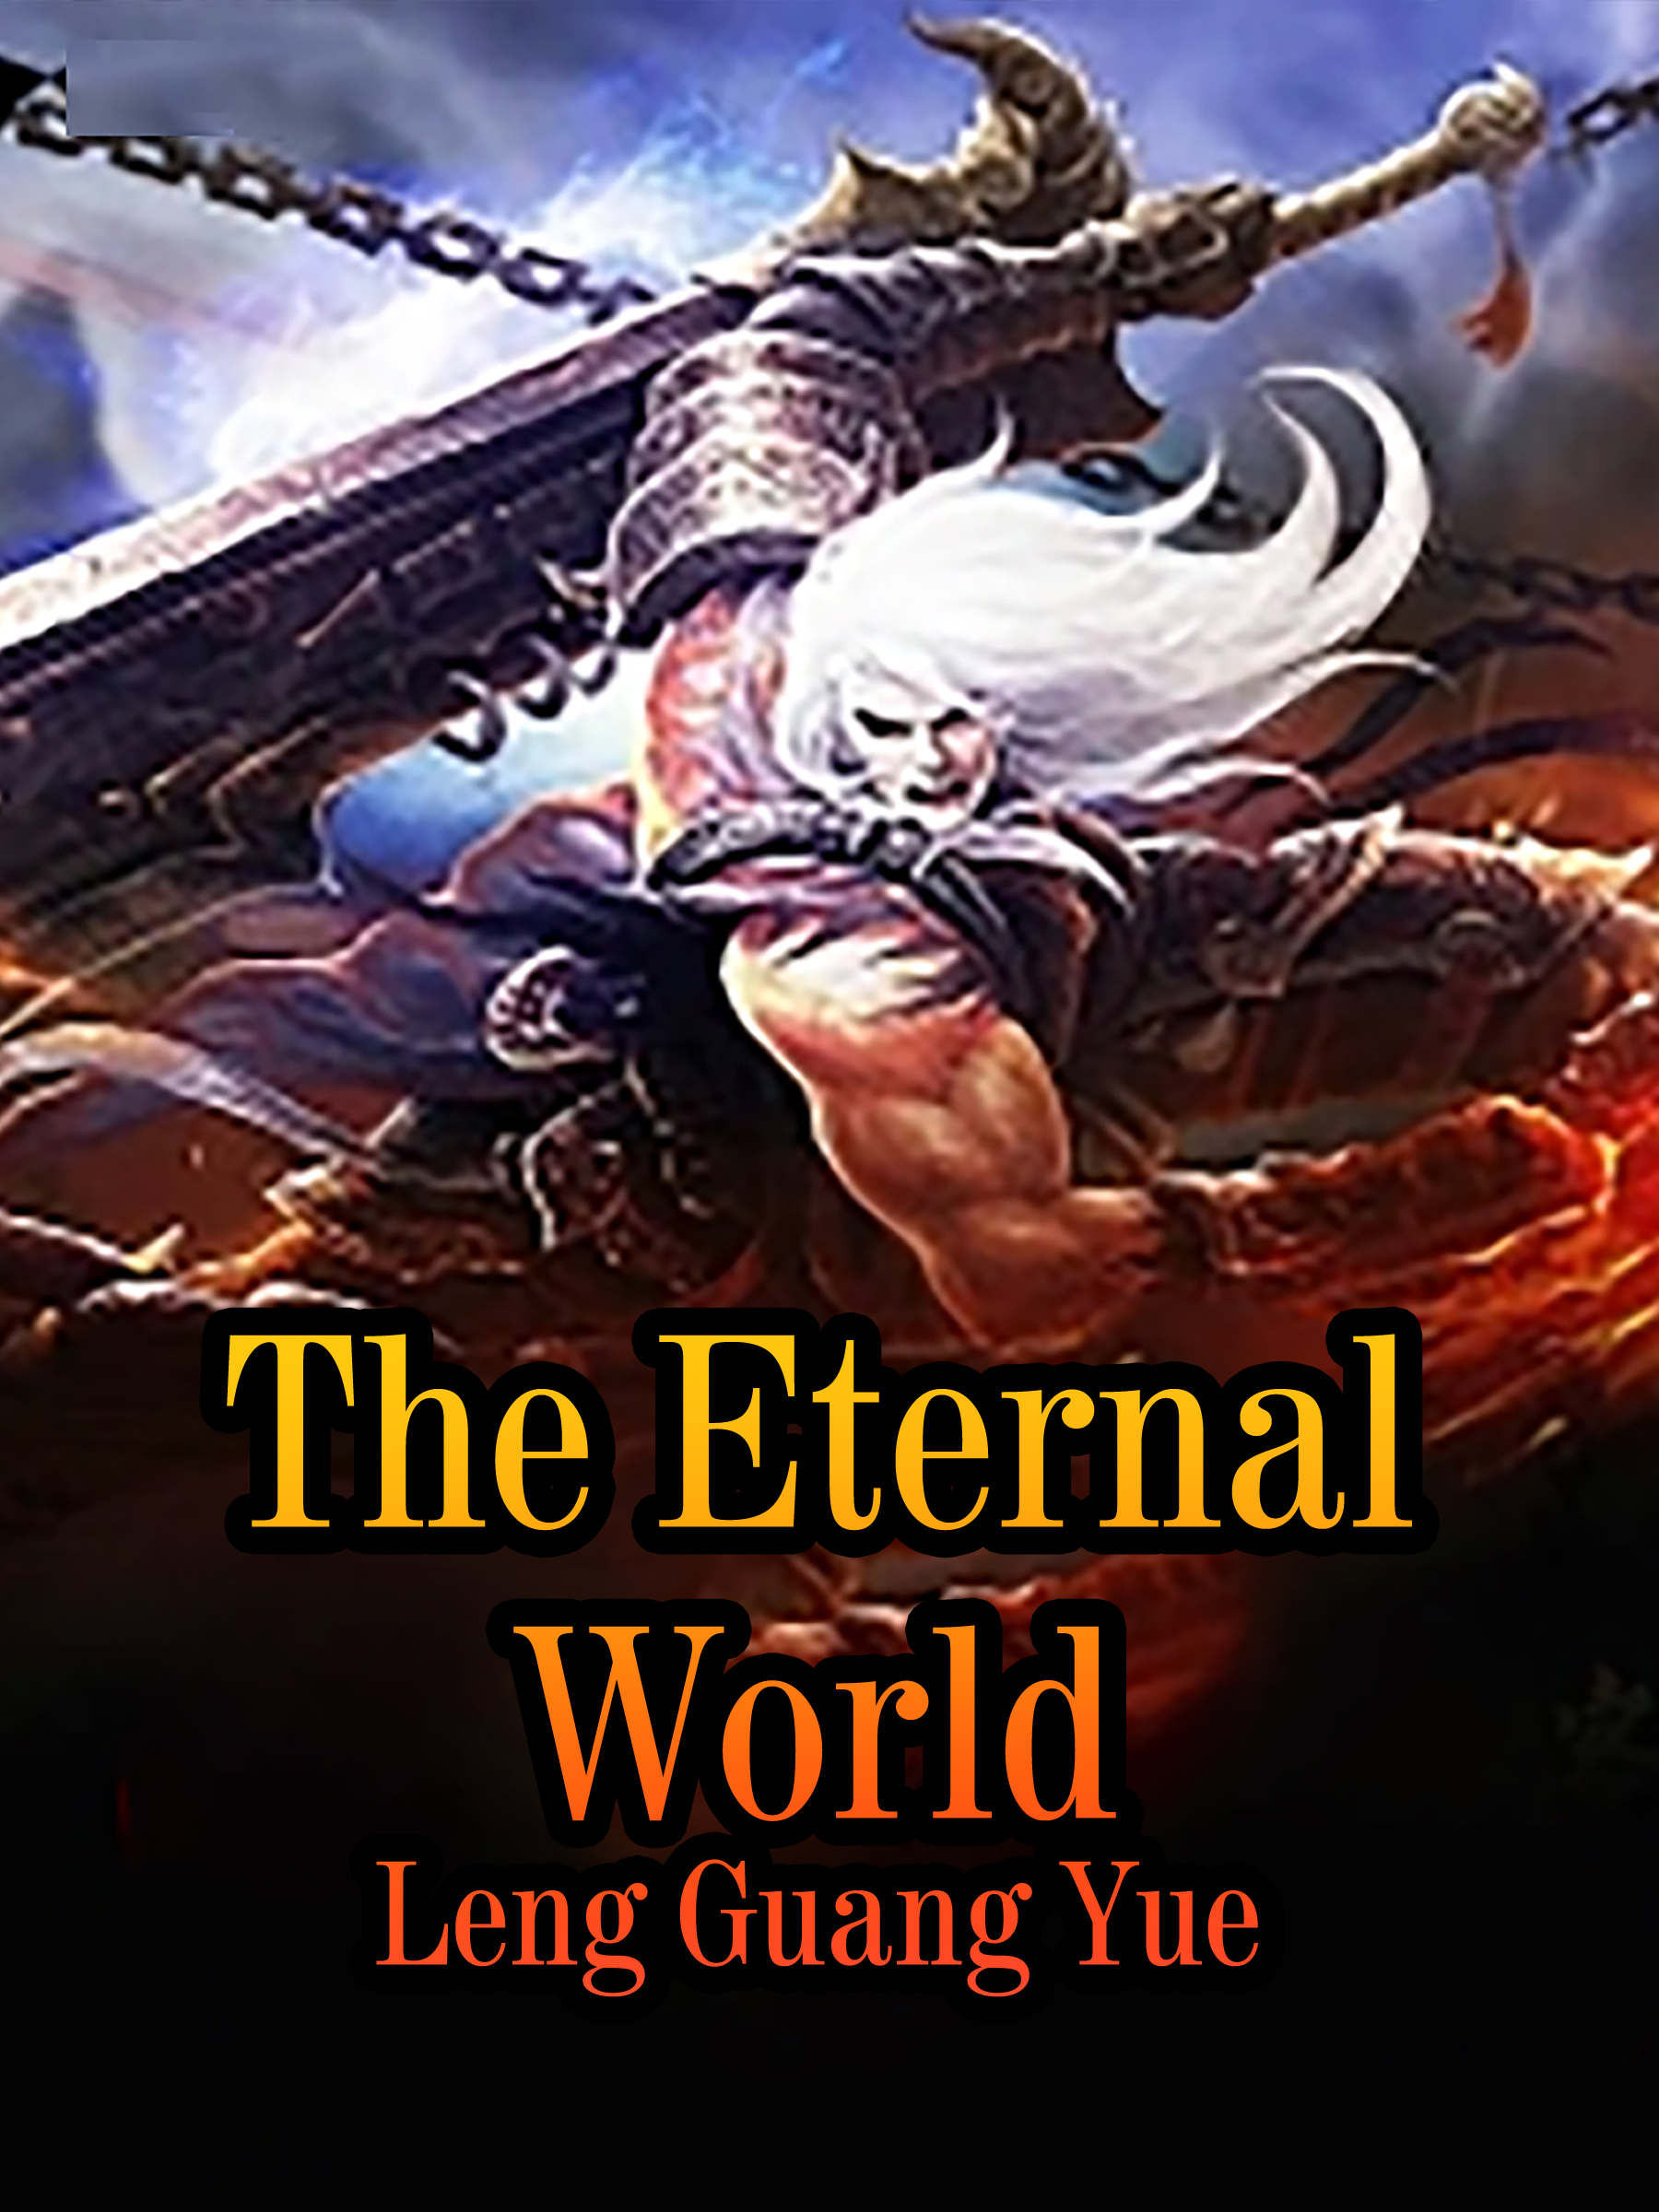 World Eternal Online download